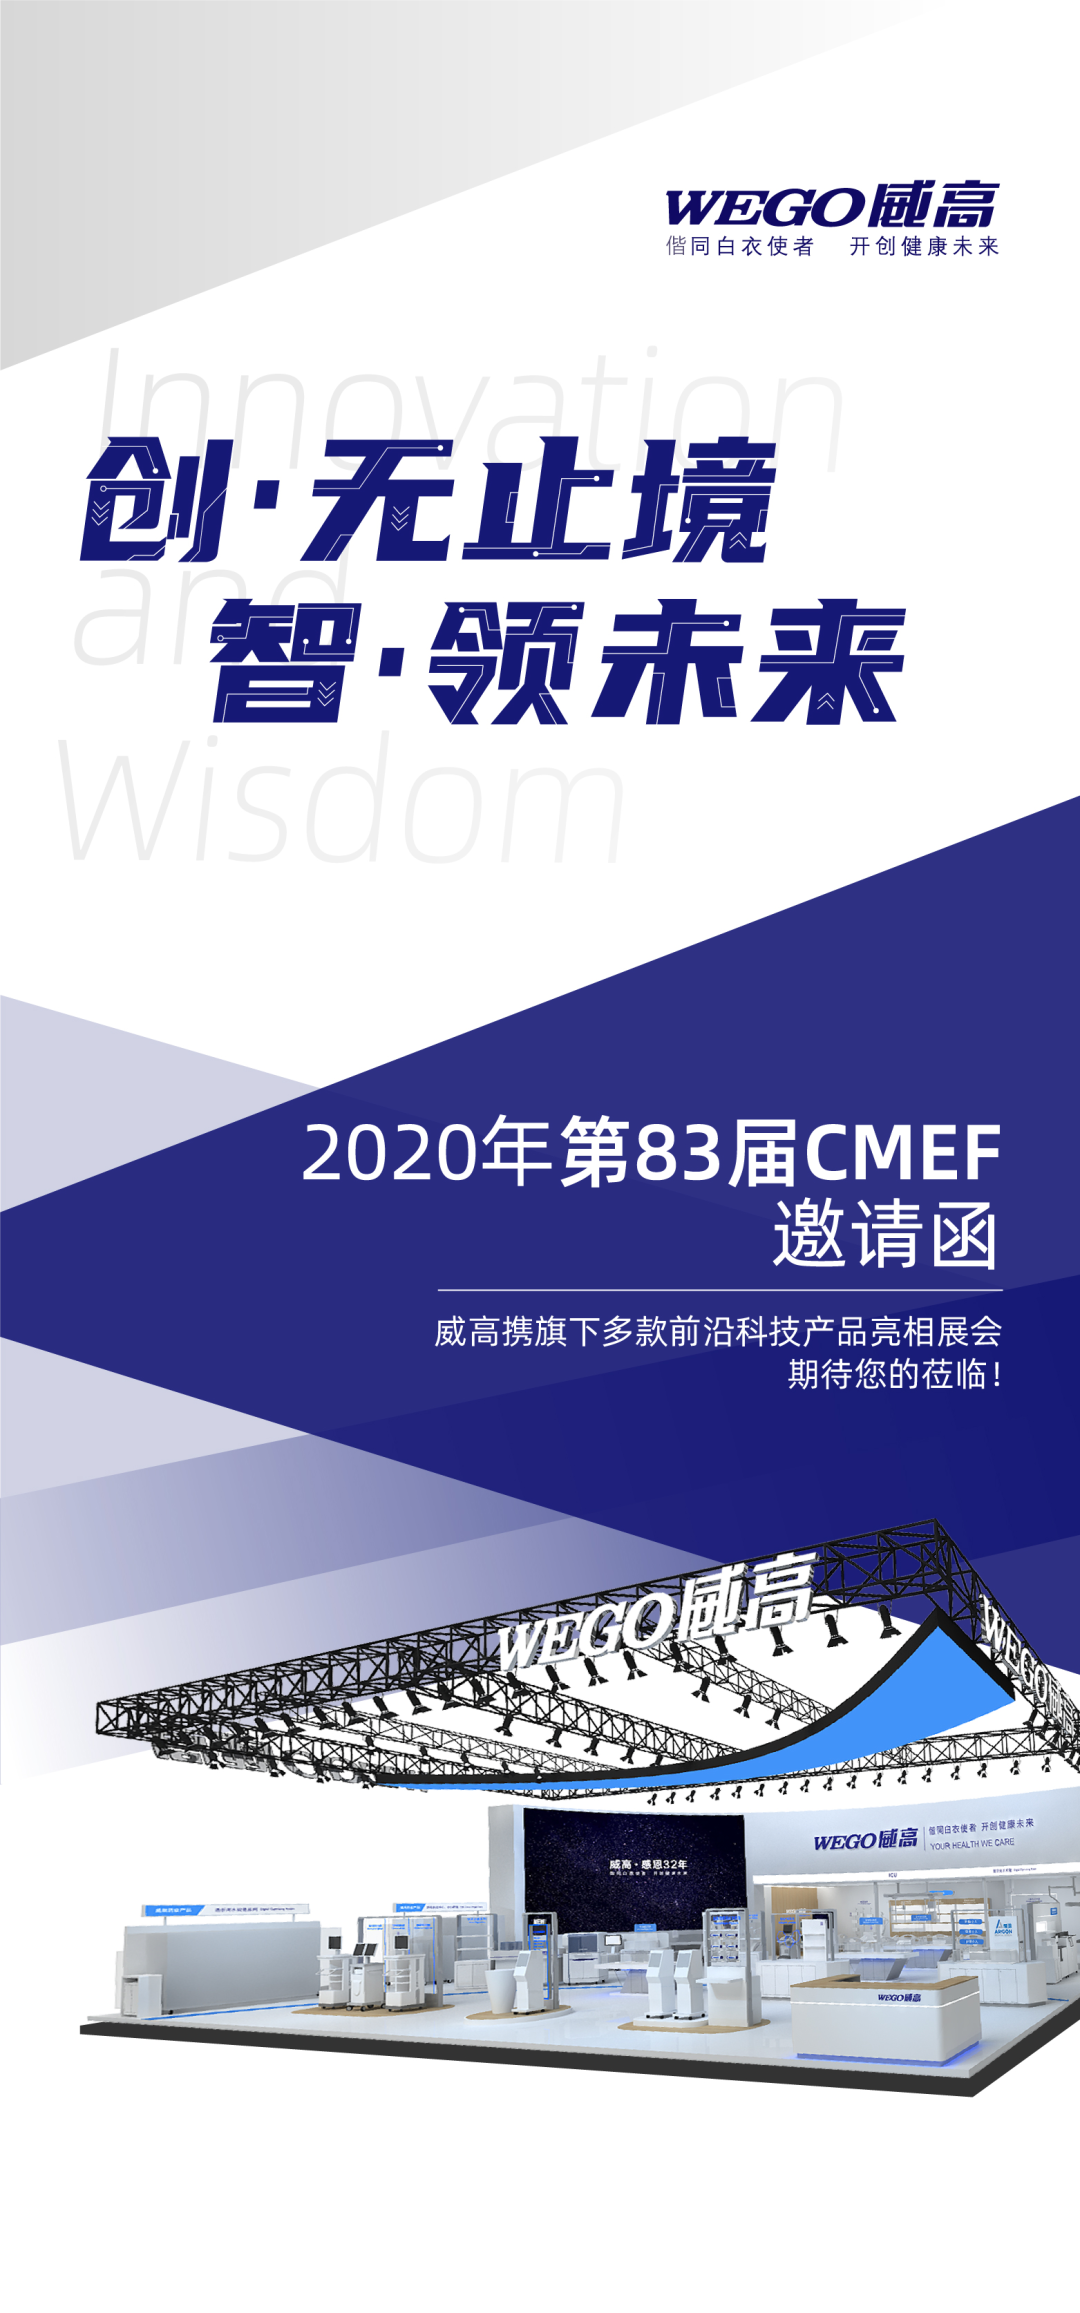 创无止境  智领未来——威高集团邀您共享2020年第83届CMEF医疗科技盛宴